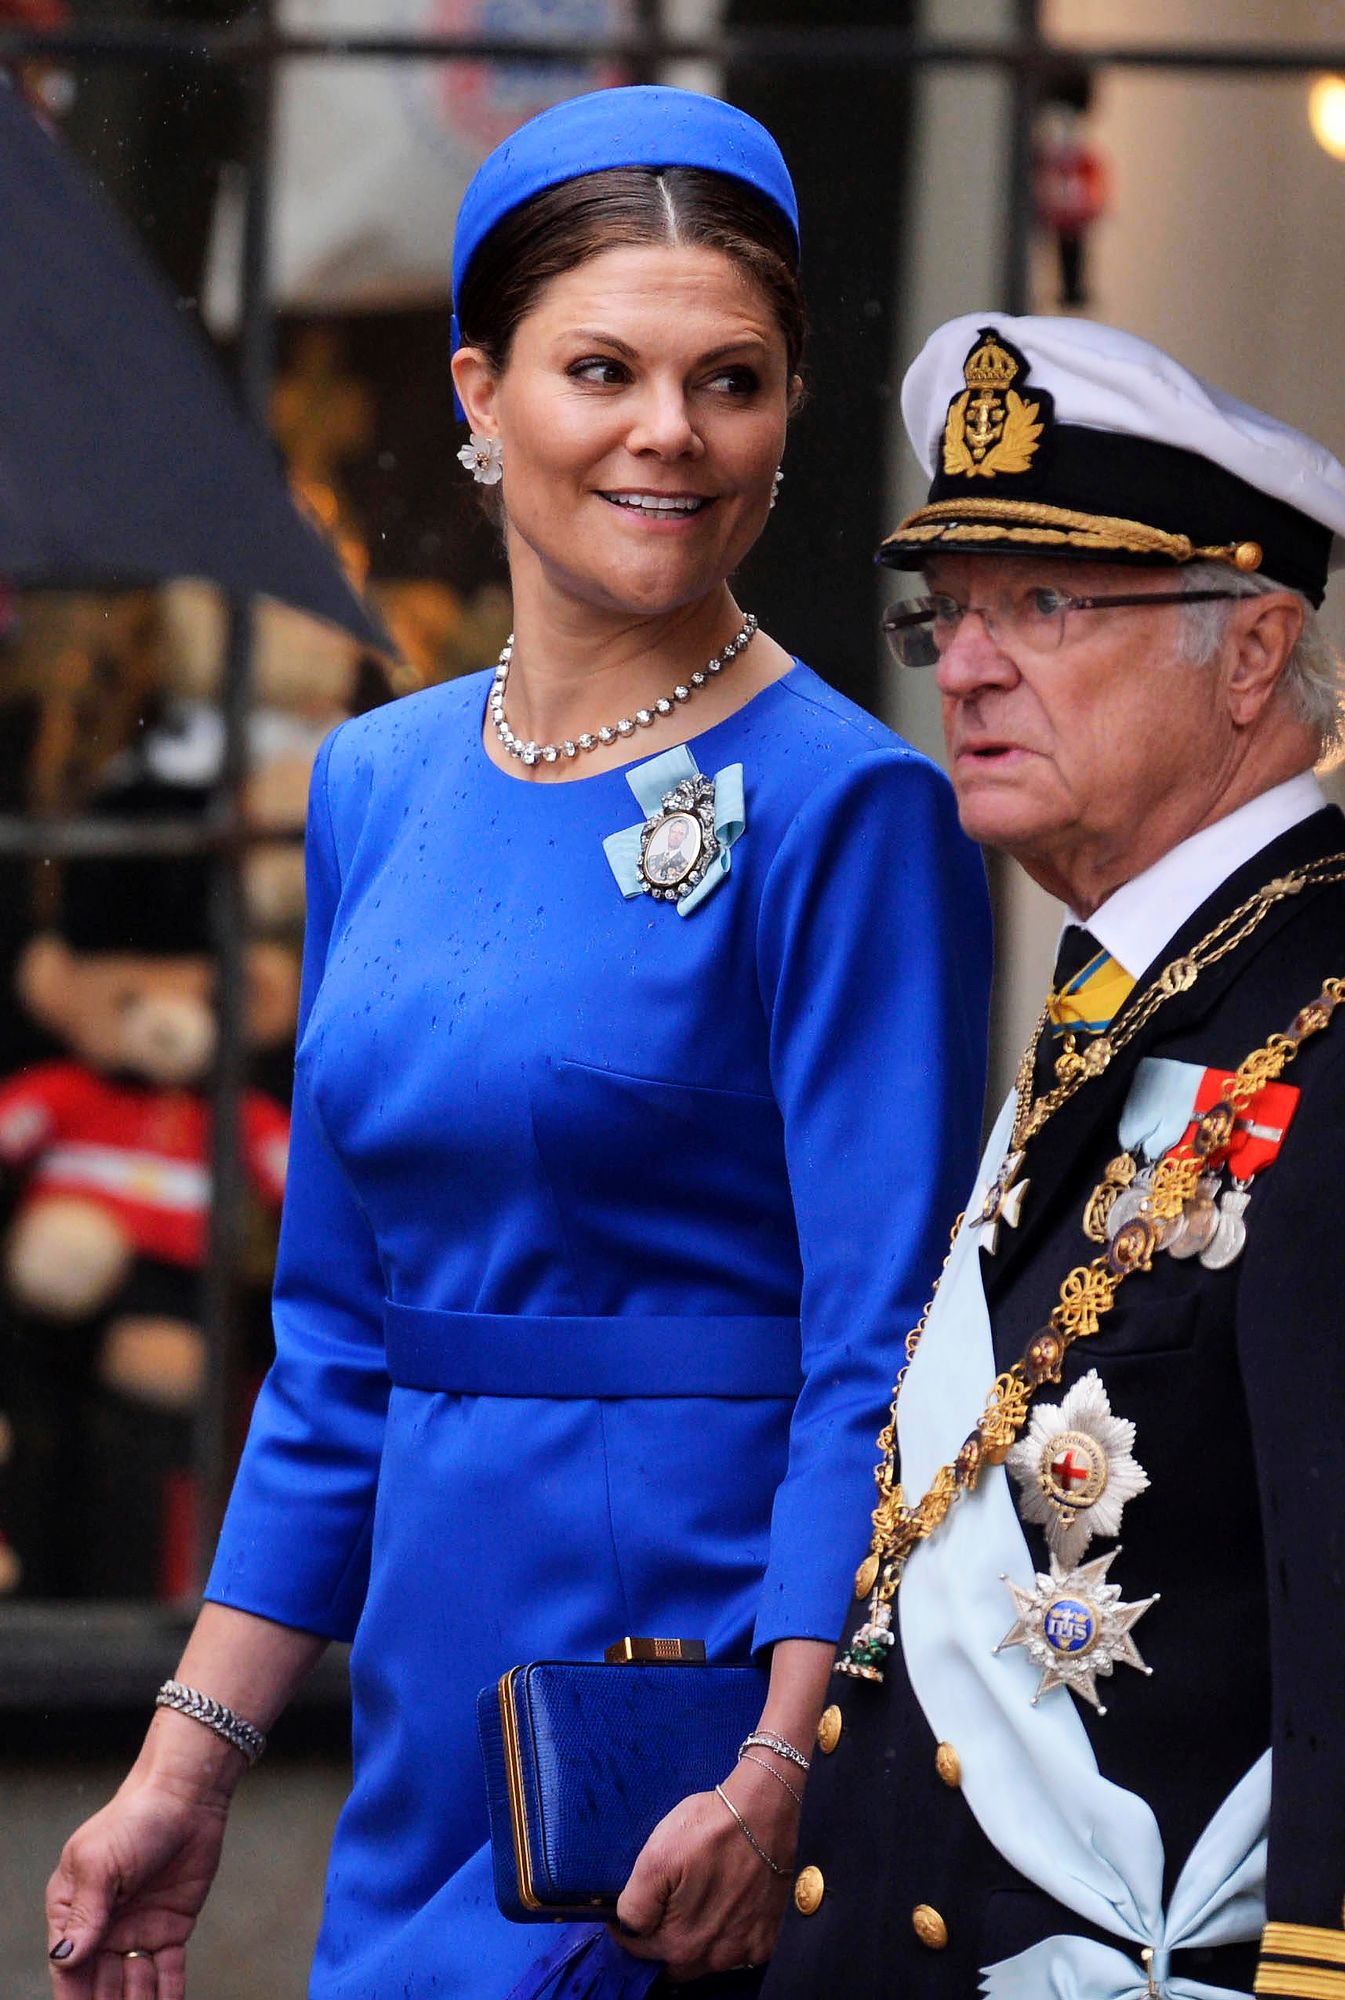 Kirkkaansiniseen asukokonaisuuteen pukeutunut Ruotsin kruununprinsessa Victoria ja kuningas Kaarle Kustaa nähtiin myös arvovaltaisten kutsuvieraiden joukossa. © George Rogers/WPA-Pool/SIPA